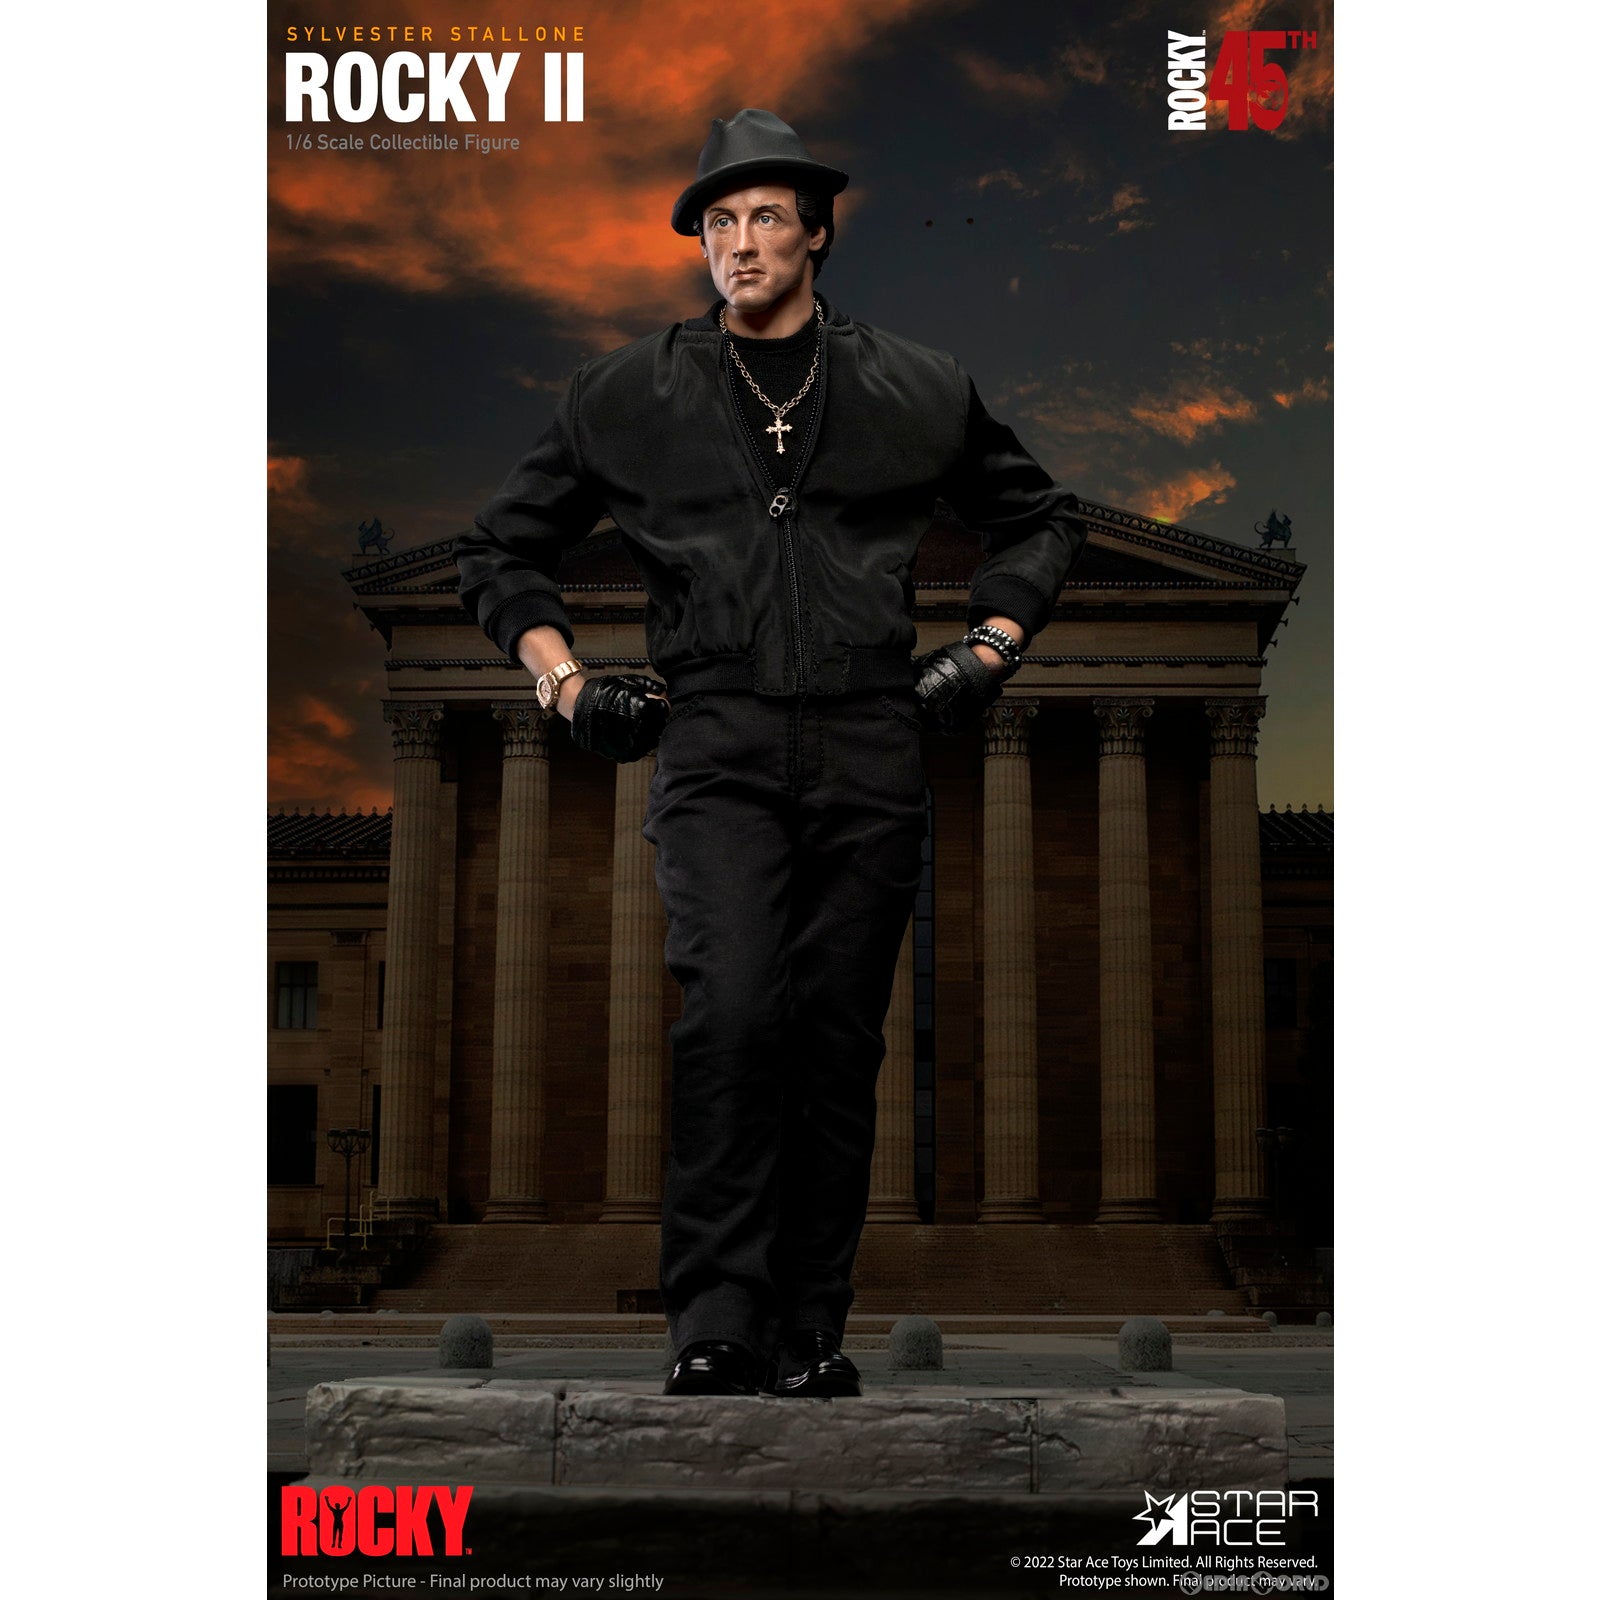 【新品即納】[FIG]ロッキー・バルボア Rocky 2(ロッキー2) 1/6 コレクタブルアクションフィギュア  スターエーストイズ/エクスプラス(20230430)